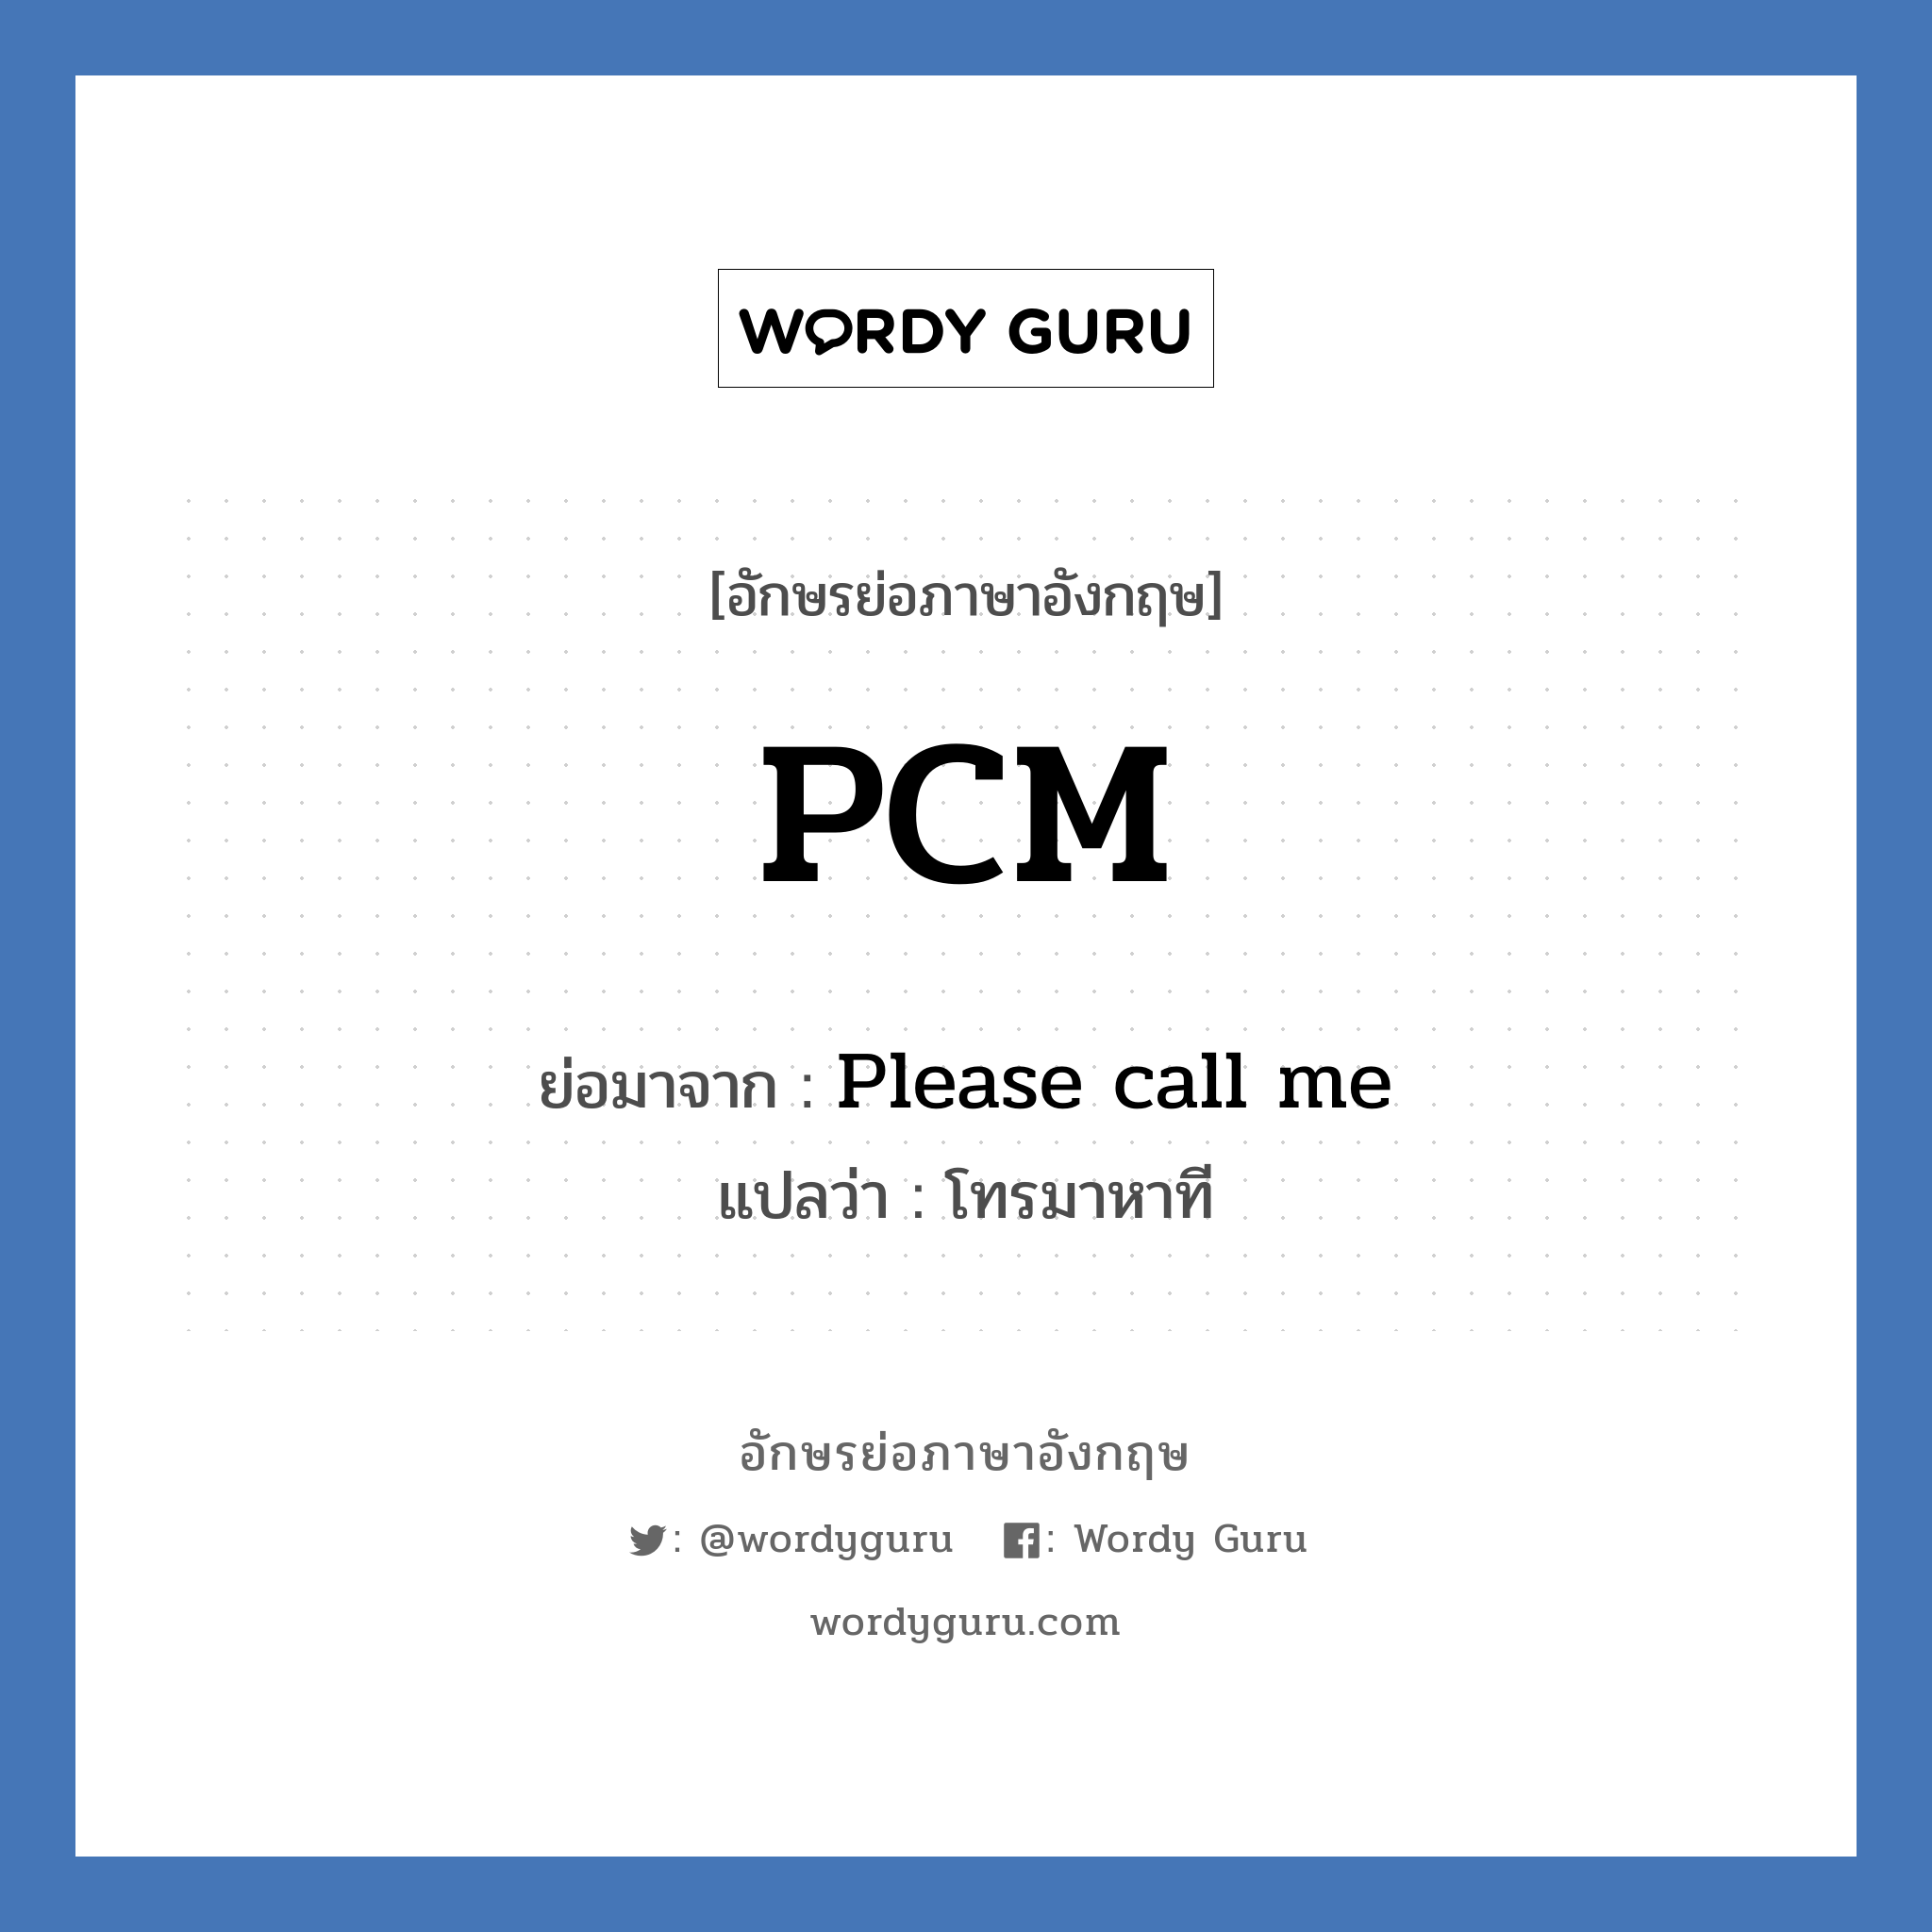 Please call me คำย่อคือ? แปลว่า?, อักษรย่อภาษาอังกฤษ Please call me ย่อมาจาก PCM แปลว่า โทรมาหาที